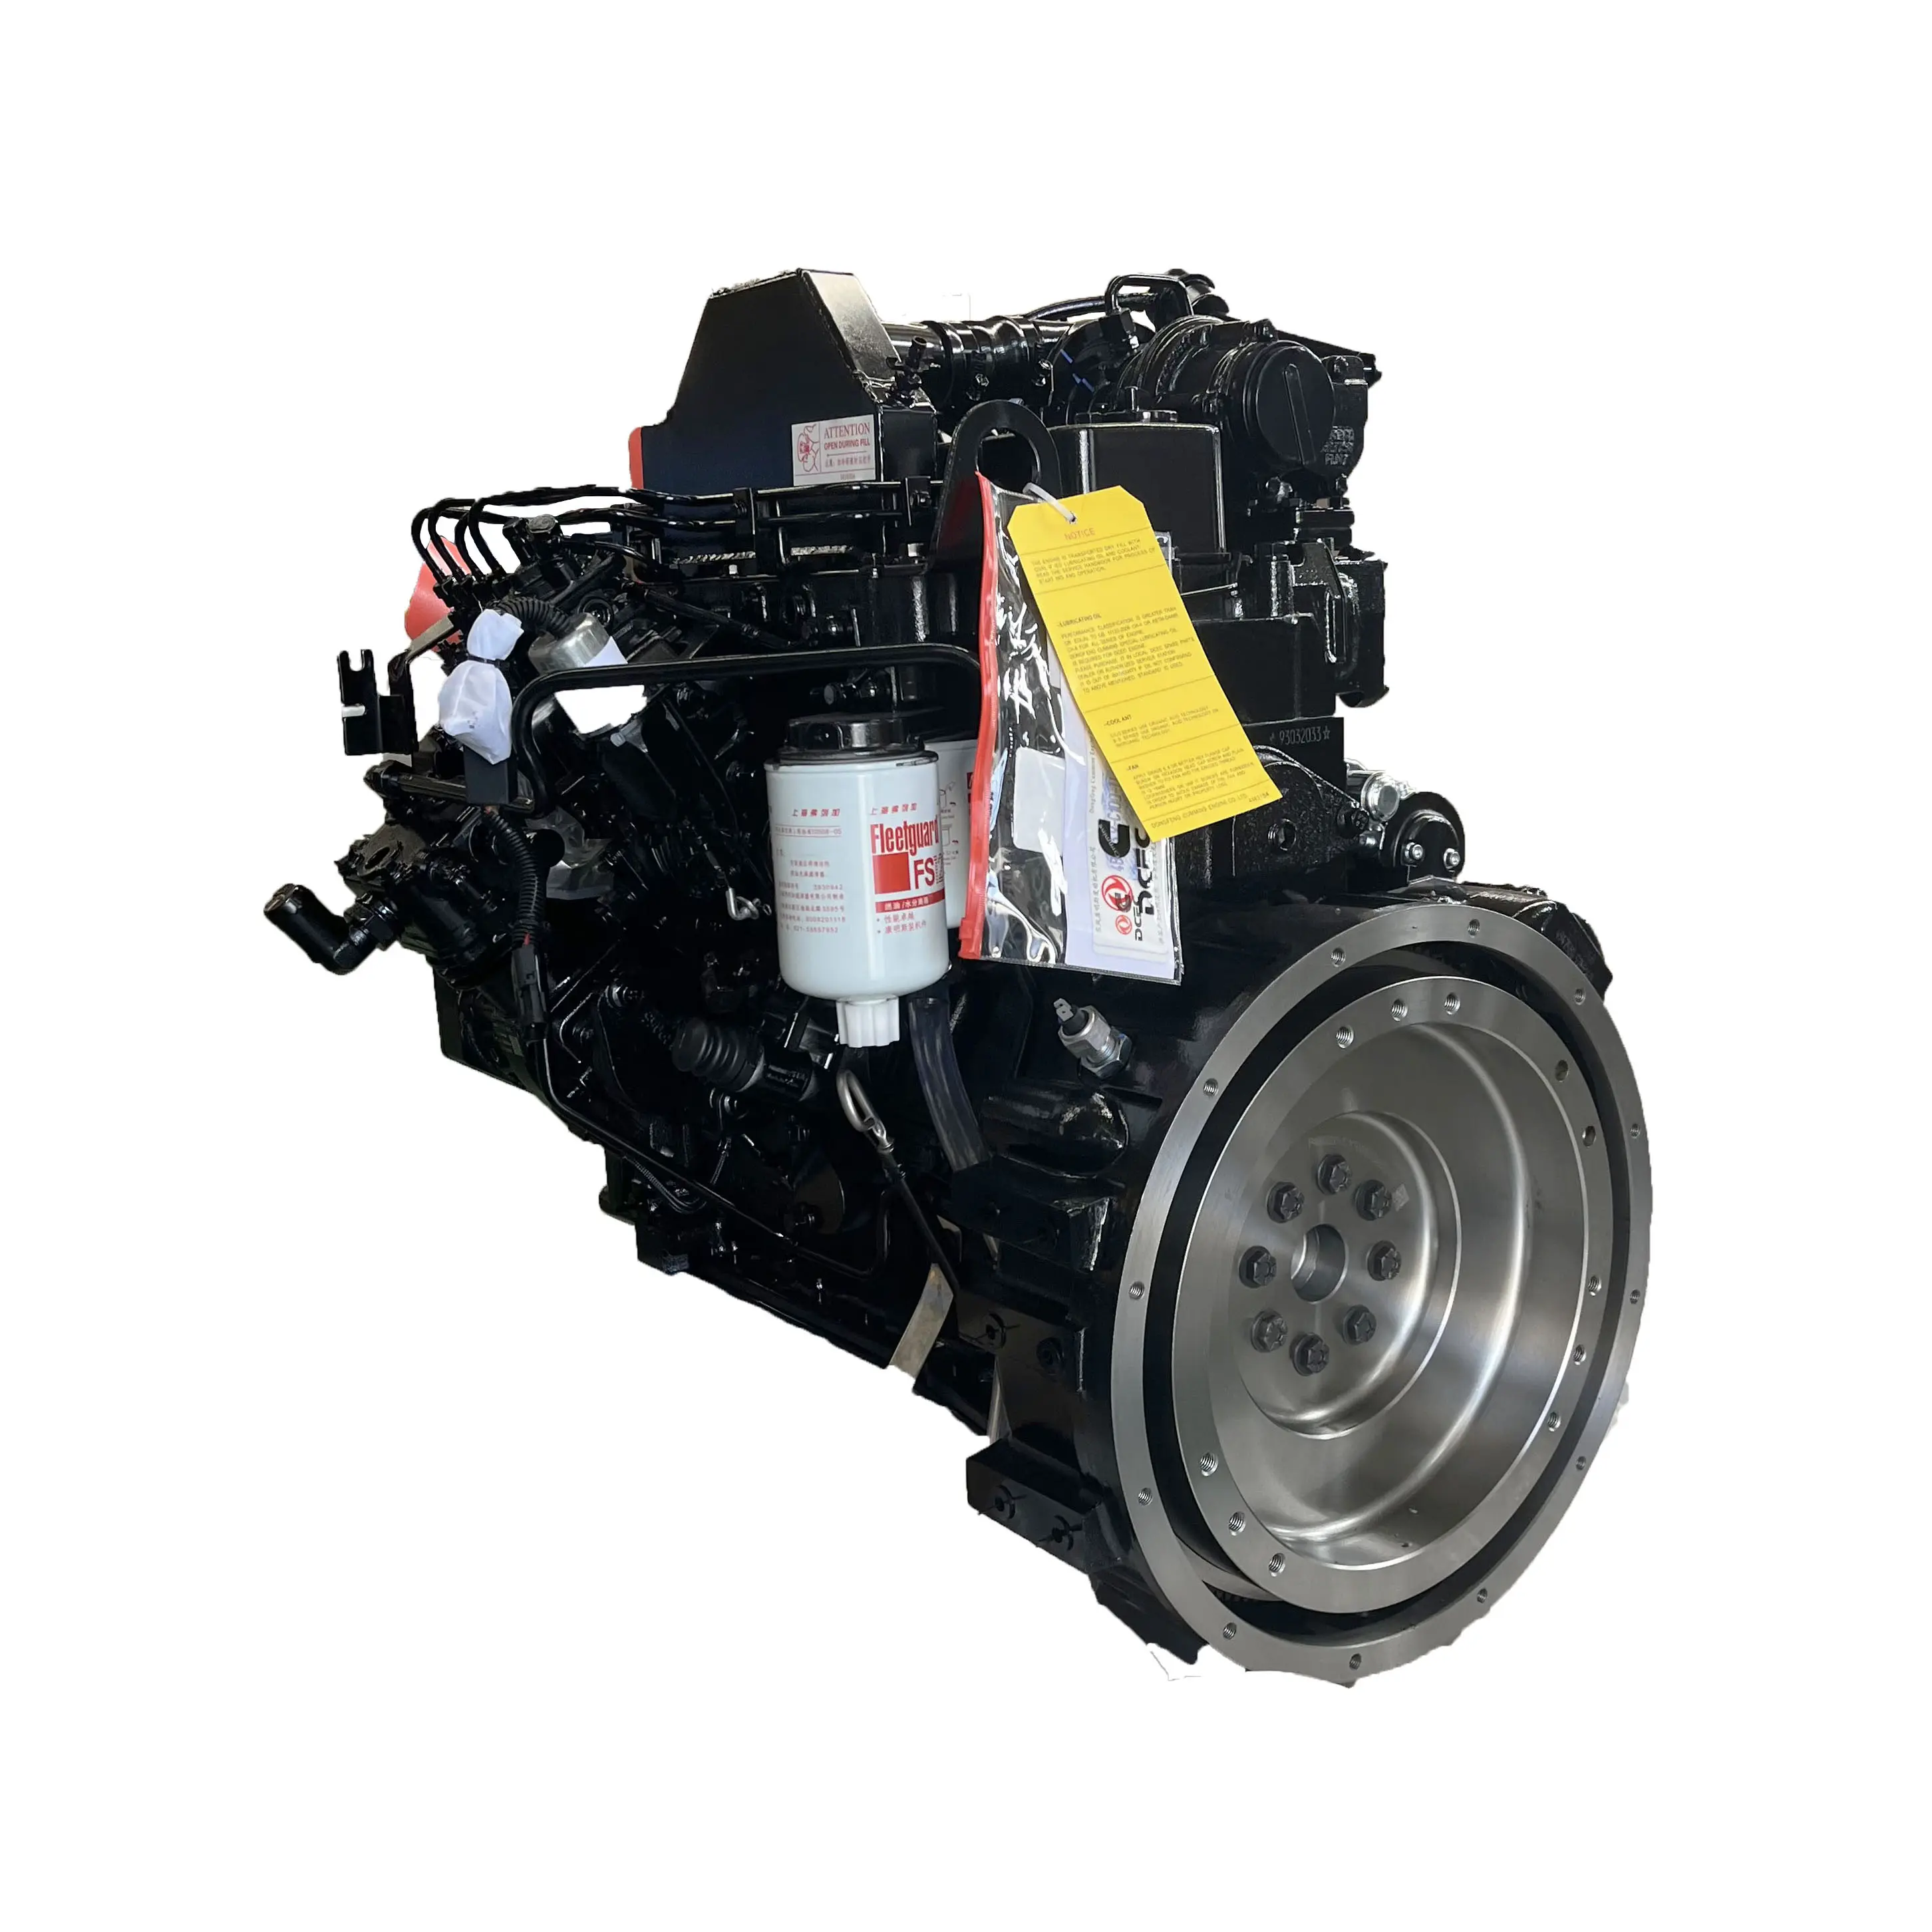 Venta al por mayor de motores de alta calidad 4BT3.9 productos motor diesel de confianza 4BT3.9